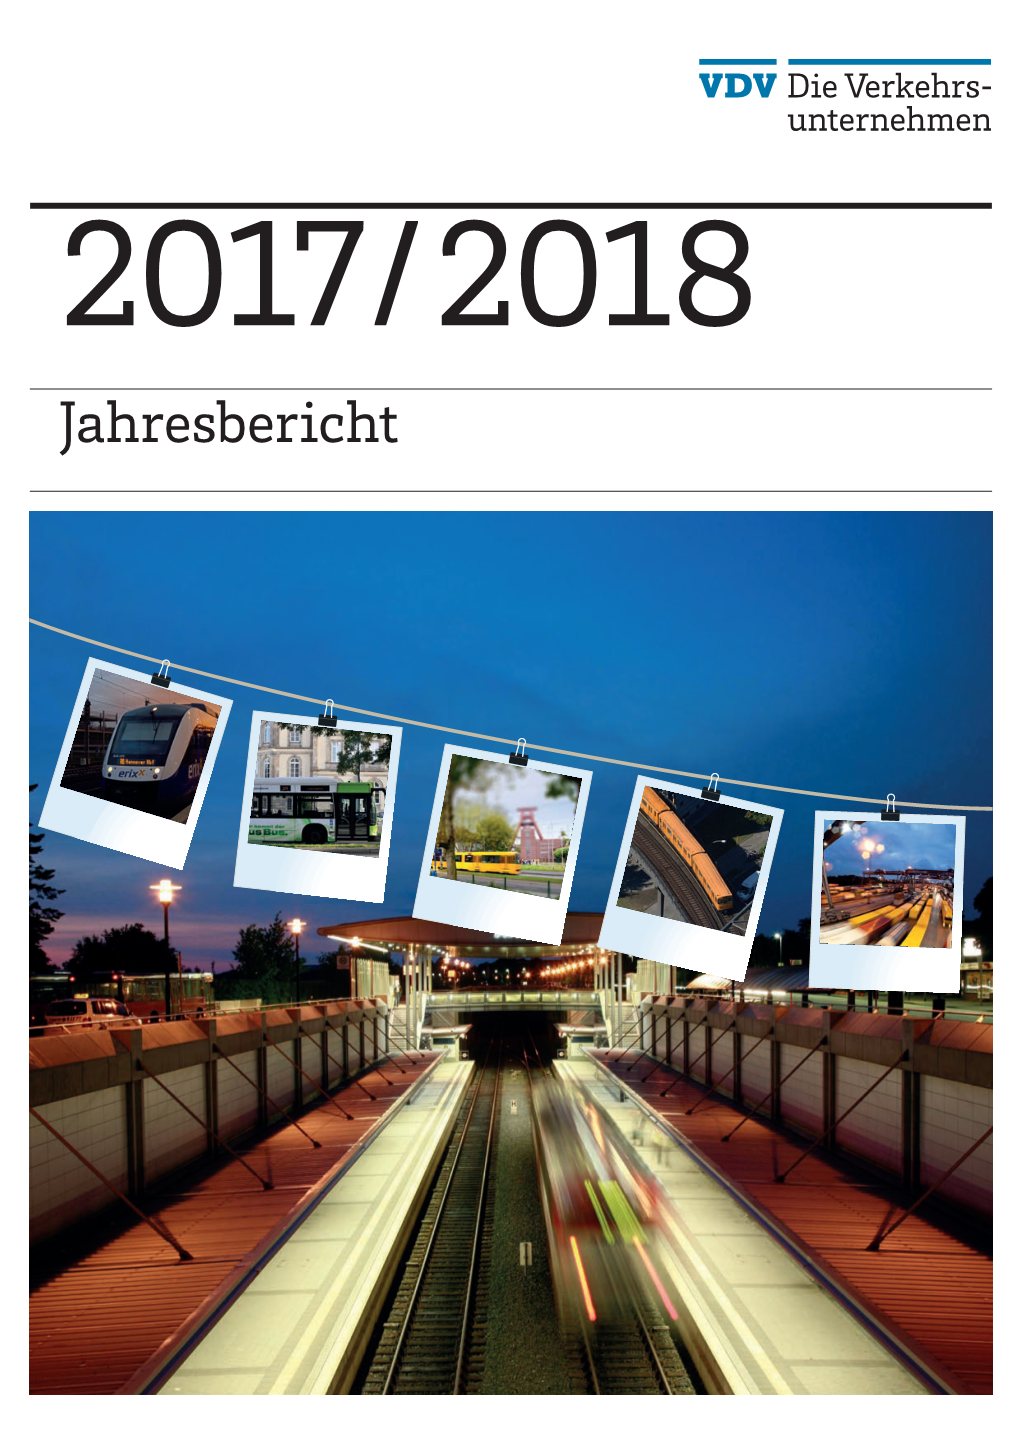 VDV-Jahresbericht 2017/2018